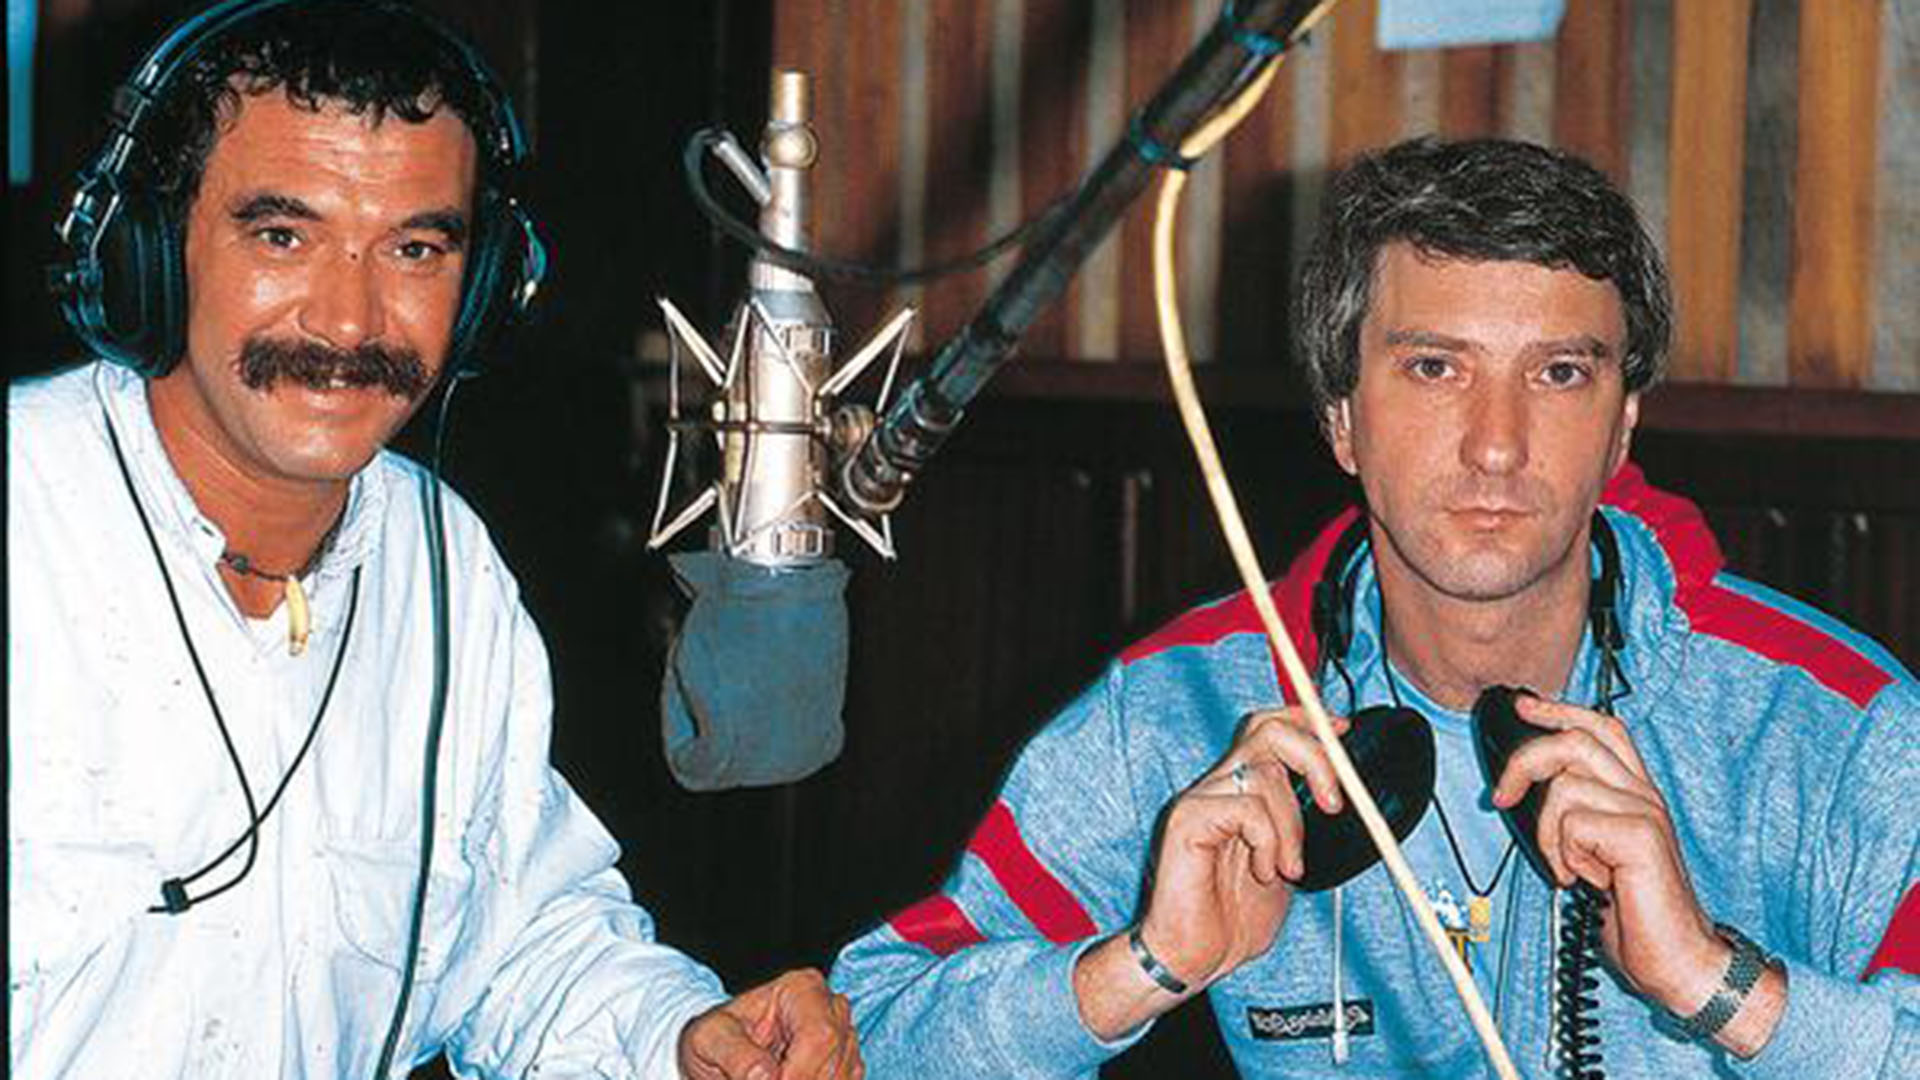 Mauro en la radio, su primer amor en el periodismo. Con él Rolando Hanglin